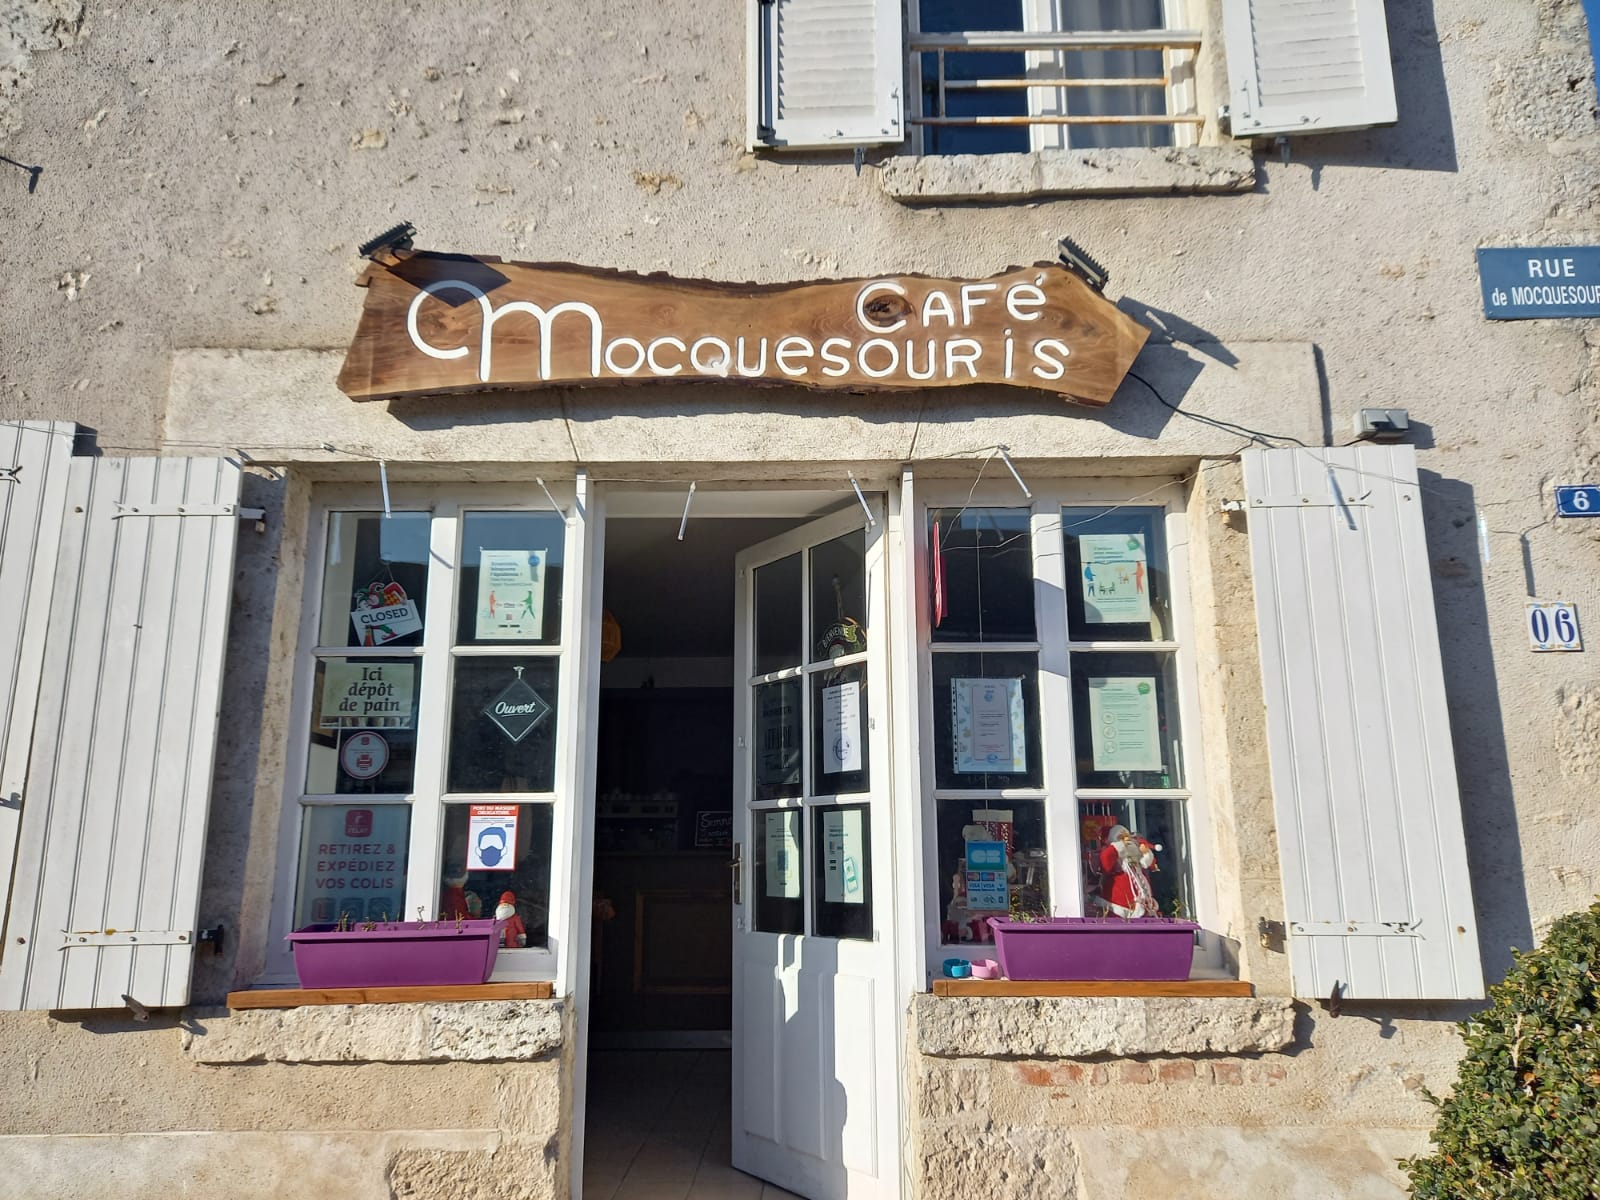 Missions :

Nous recherchons actuellement un.e candidat.e à la gérance du futur café multiservice à Baccon, qui est ouvert dans le cadre de l’initiative « 1000 cafés ». Le besoin en personnel étant d’1,6 ETP (équivalent temps plein), les candidatures de binômes sont encouragées. Le/la gérant.e peut en effet être accompagné.e d’une personne salariée par le café.

Baccon est un village situé dans le département du Loiret et la région du Centre-Val de Loire. Ses habitants sont appelés les Bacconnais et les Bacconnaises.​

Le bourg, établi sur une élévation de 125 mètres, s’étend autour d’un rond-point joliment fleuri. Autour de lui, des habitations anciennes : hôtel de l’Écu et auberge du Coq (xve siècle). Derrière l’église, une tour en maçonnerie qui faisait partie du système de communication des frères Chappe sur la ligne de Paris-Bayonne 1823. À 2 km, le hameau de la Renardière s’étire le long d’une Mauve (bras de la Détourbe), coin de verdure où l’augmentation de l’habitat se poursuit. Des hameaux de plus petite envergure tels Fontaine, Hotton et quelques fermes isolées complètent le paysage.​

La commune s'étend sur 33 km² et compte 730 habitants au 1er janvier 2017. Avec une densité de 22,1 habitants par km², Baccon a connu une nette hausse de 16,1% de sa population par rapport à 1999.

La restauration et le bar étant des activités importantes pour ce projet, nous valorisons les expériences en restauration et en hôtellerie. Les autres services pressentis sont :  Restauration, bar, dépôt de pain, FDJ, animations, épicerie, dépannage tabac

Nous recherchons avant tout des personnalités garantissant la convivialité du lieu, capables de co-construire les services de proximité répondant aux besoins identifiés en lien avec la commune, en adhésion avec les valeurs de l’économie sociale et solidaire. Des qualités de gérant, de commerçant ainsi qu’une réelle volonté d’entreprendre sont clés pour ce poste.

La perspective de contribuer à la revitalisation rurale en prenant la gérance d’un café multiservice vous séduit ? Rejoignez maintenant l’initiative 1000 Cafés !

1000 cafés est une initiative du GROUPE SOS qui a pour but de recréer du lien social dans les communes rurales. Elle contribue à redynamiser les territoires par la création ou la reprise de cafés multiservice dans des communes de moins de 3 500 habitants qui n'ont plus de café ou risquent de le perdre.

Les principes de l'initiative “1000 cafés” du GROUPE SOS sont :

● Faire du café un espace de convivialité multiservice qui proposera un café et une gamme de services de proximité qui n’existent plus dans la commune
● Créer un café au plus près de chaque territoire : faire participer les habitants des communes, écouter leurs besoins et envies, en s’assurant que le café vivra pleinement demain
● Accompagner le café dans la création et la gestion au quotidien : faciliter l’accès aux locaux, mutualiser des fournisseurs, proposer des outils de gestion, accompagner les relations avec les institutions

L’initiative 1000 cafés a été lancée en septembre 2019 et nous comptons déjà un réseau de cafés multiservice en pleine croissance.

Si vous souhaitez vous lancer dans une aventure entrepreneuriale au service de la convivialité de votre village, si vous voulez être au cœur d’un projet pensé pour et par les habitants, alors portez-vous candidat !
Pour plus d’informations, rendez-vous sur notre site internet 1000cafés.org

Profil recherché : 

• Vous souhaitez vous engager en faveur de la ruralité et de la redynamisation des petites communes 
• Vous justifiez d’une expérience significative dans le secteur de la restauration et maitrisez les techniques culinaires essentielles, ainsi que les normes d’hygiène et de sécurité
• Vous êtes disponible et prêt à vous engager dans une démarche entrepreneuriale afin que le projet prenne corps au sein du village
• Vous avez des bases solides en gestion et faites preuve de rigueur et d’organisation
• Vous êtes fédérateur et maîtrisez les outils de communication
• Vous êtes motivé, sérieux, adaptable, proactif et avez un fort intérêt pour les valeurs de l’économie sociale et solidaire
• Vous savez gérer des situations difficiles en gardant votre sang-froid
• Vous remplissez les conditions liées à l’octroi d’une licence de débit de boissons (licence IV).

Votre rémunération dépend du niveau d’activité de la SARL dont vous aurez la responsabilité en tant que gérant. Notre objectif : créer le cadre nécessaire pour que vous puissiez vous rémunérer à hauteur de 1800€ mensuel brut. Base à laquelle vient s'ajouter  :​

	•     1,5 % du chiffre d’affaires mensuel pour l'activité de restauration et de bar​

	•     1% du chiffre d'affaires mensuel sur les autres services​

           •     33% du résultat annuel d'exploitation 

Ouverture envisagée : début 2024 

Statut : Gérant.e mandataire